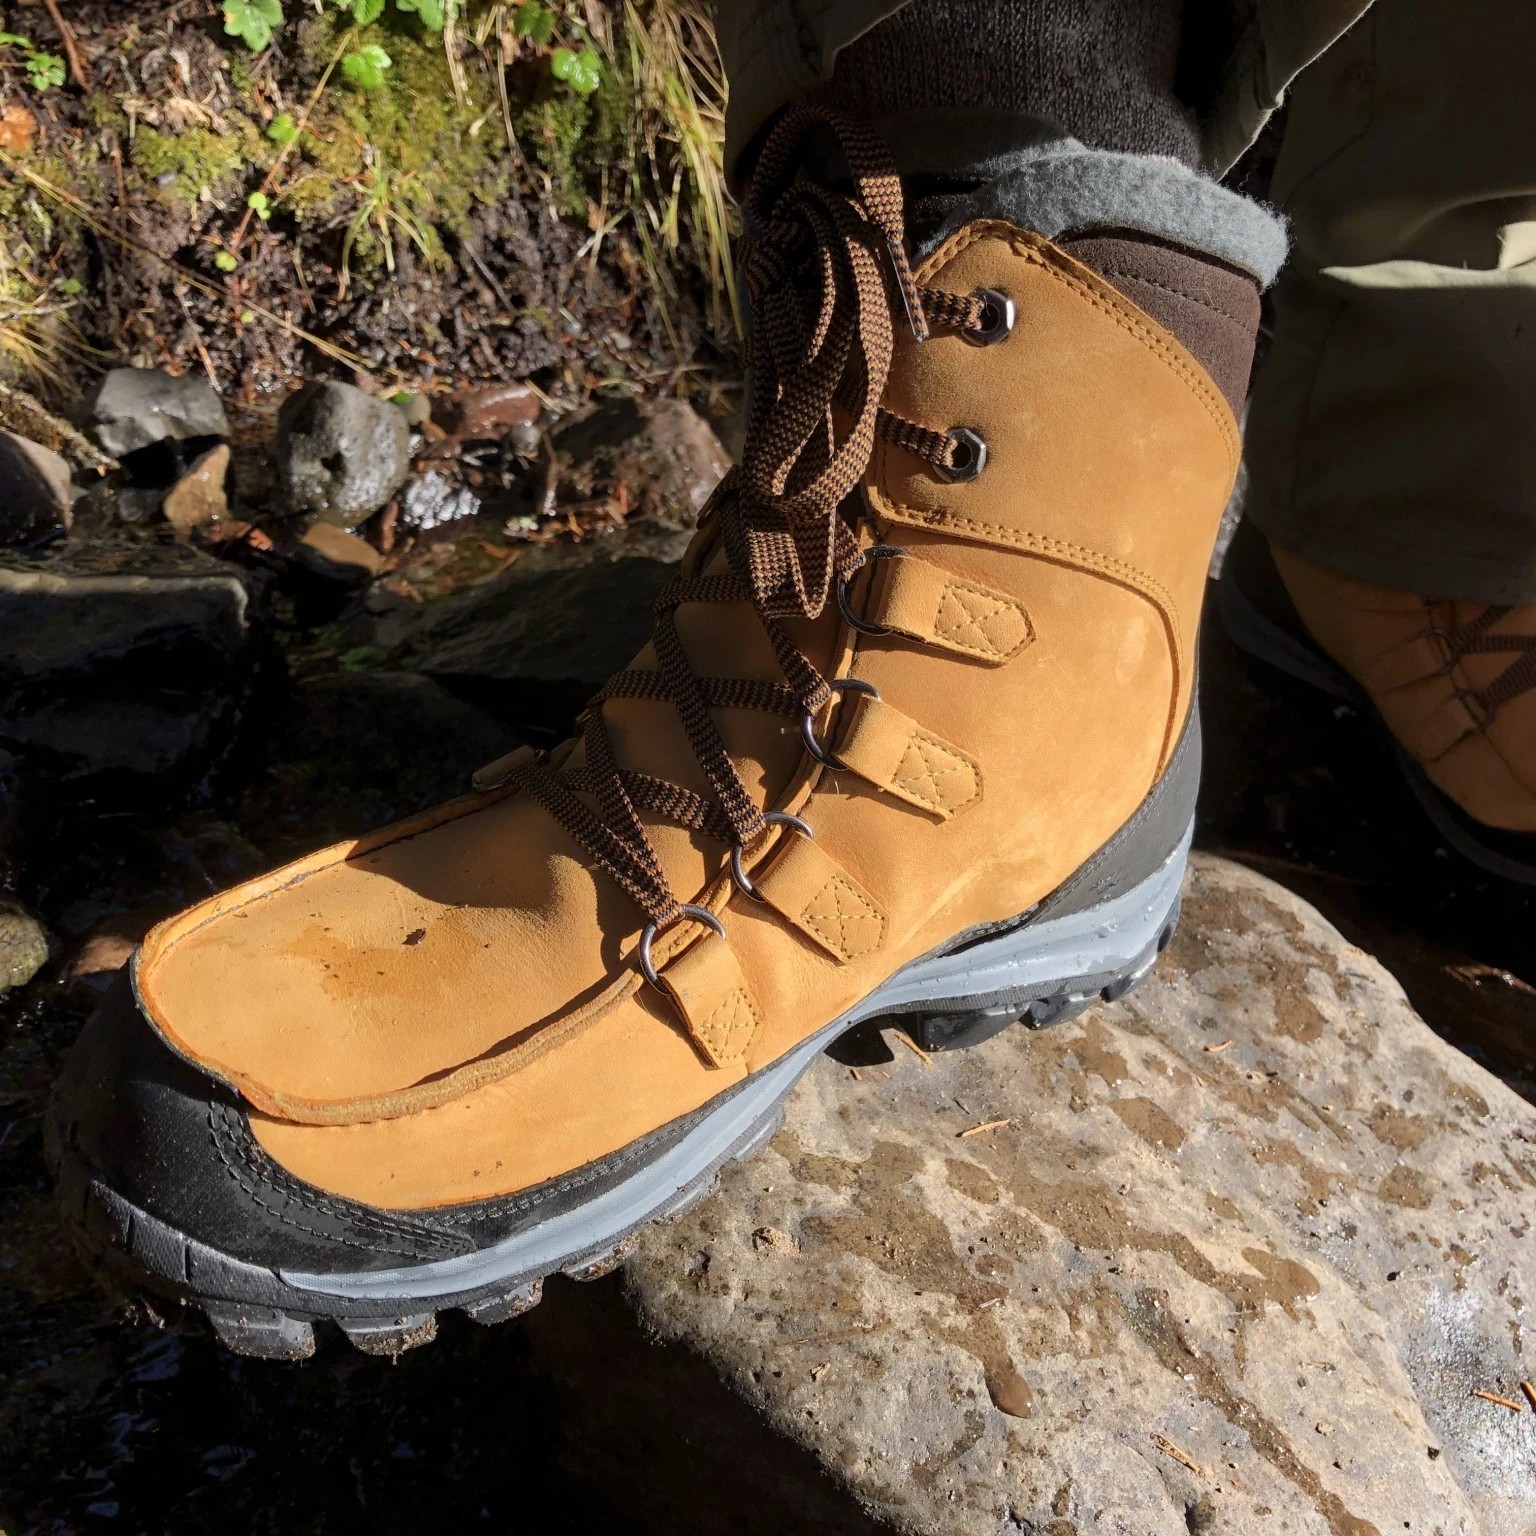 Timberland Chillberg Premium WP Insulated Winter Boots